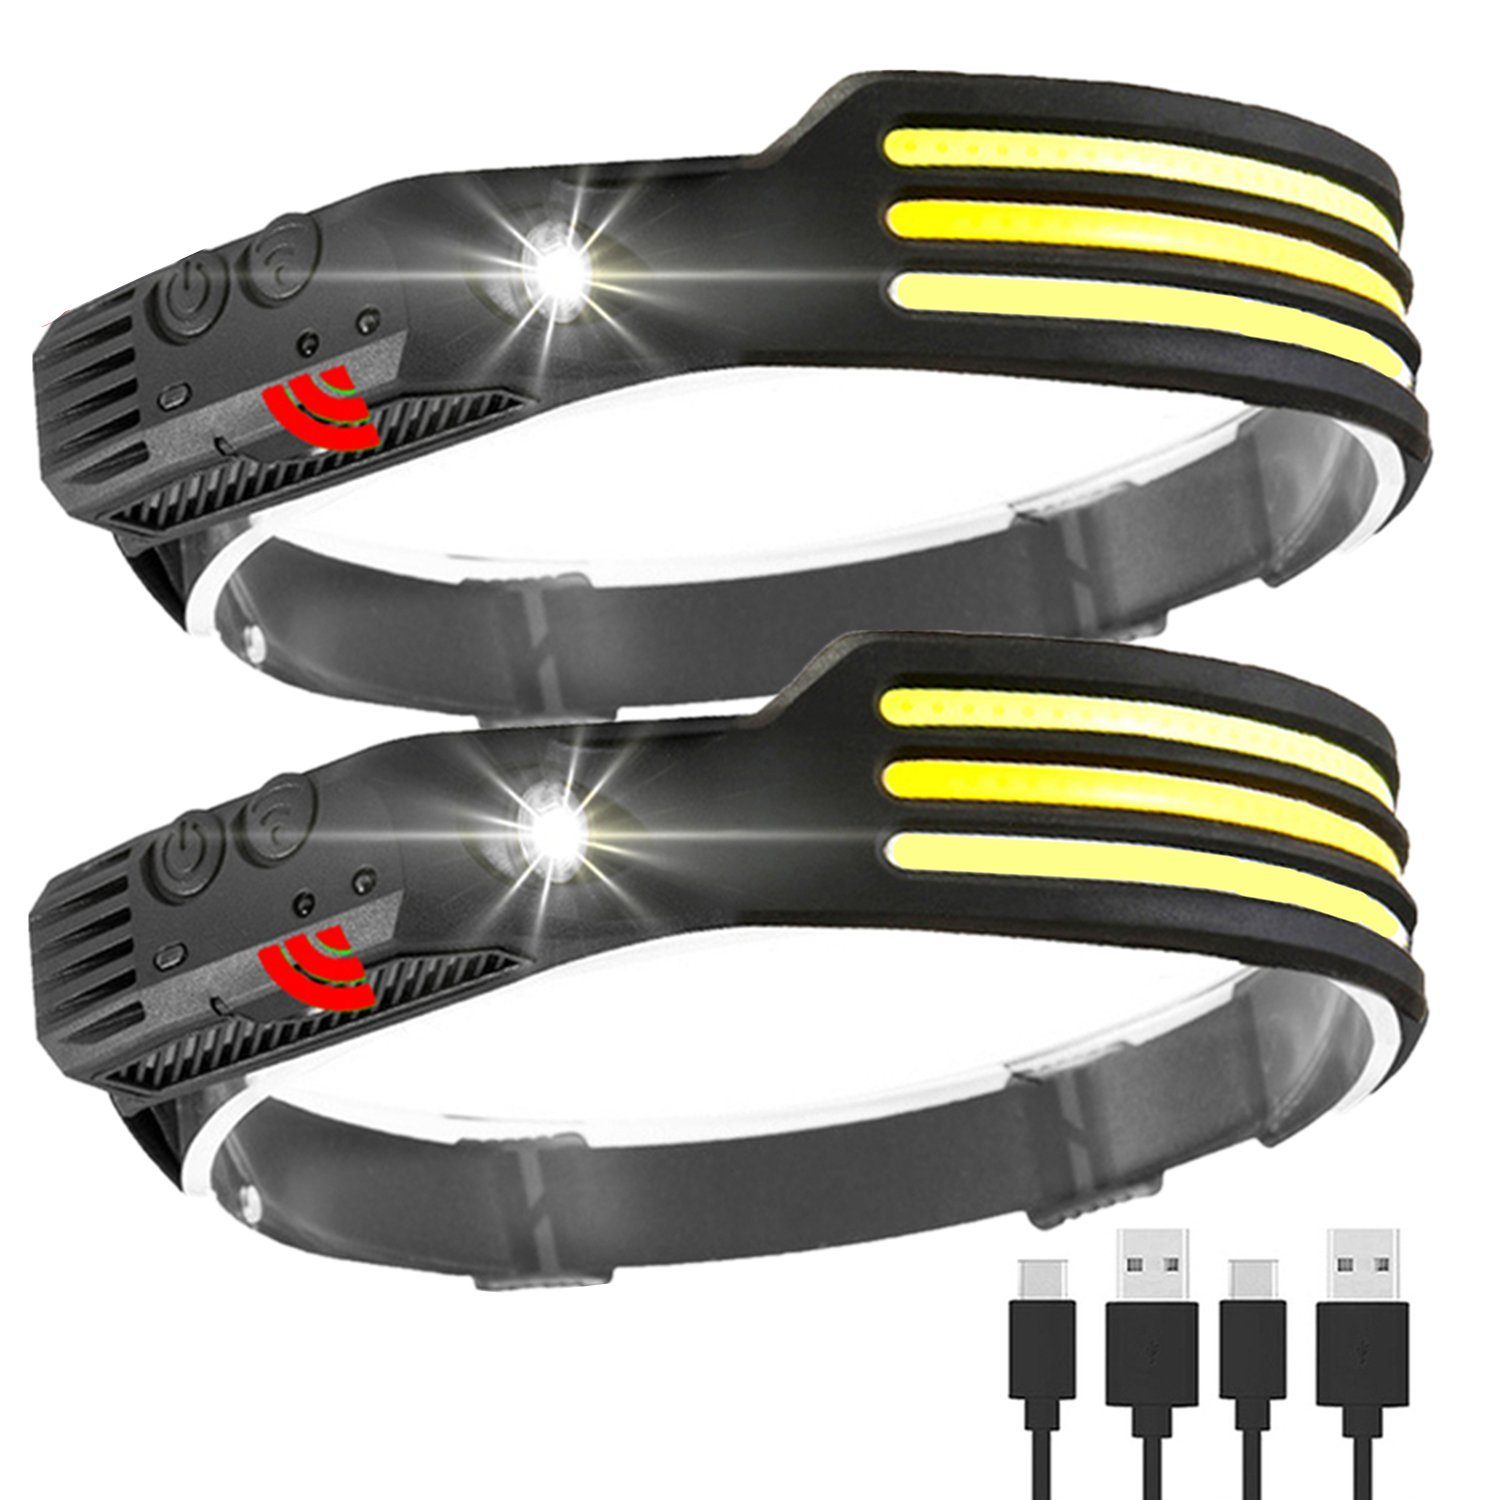 Olotos Stirnlampe LED COB XPE Kopflampe Scheinwerfer USB Wiederaufladbar mit Sensor (2 Stück Set), 5 Modi 1500mAh 230°Ultra Weitwinkel Licht IPX4 Wasserdicht | Stirnlampen